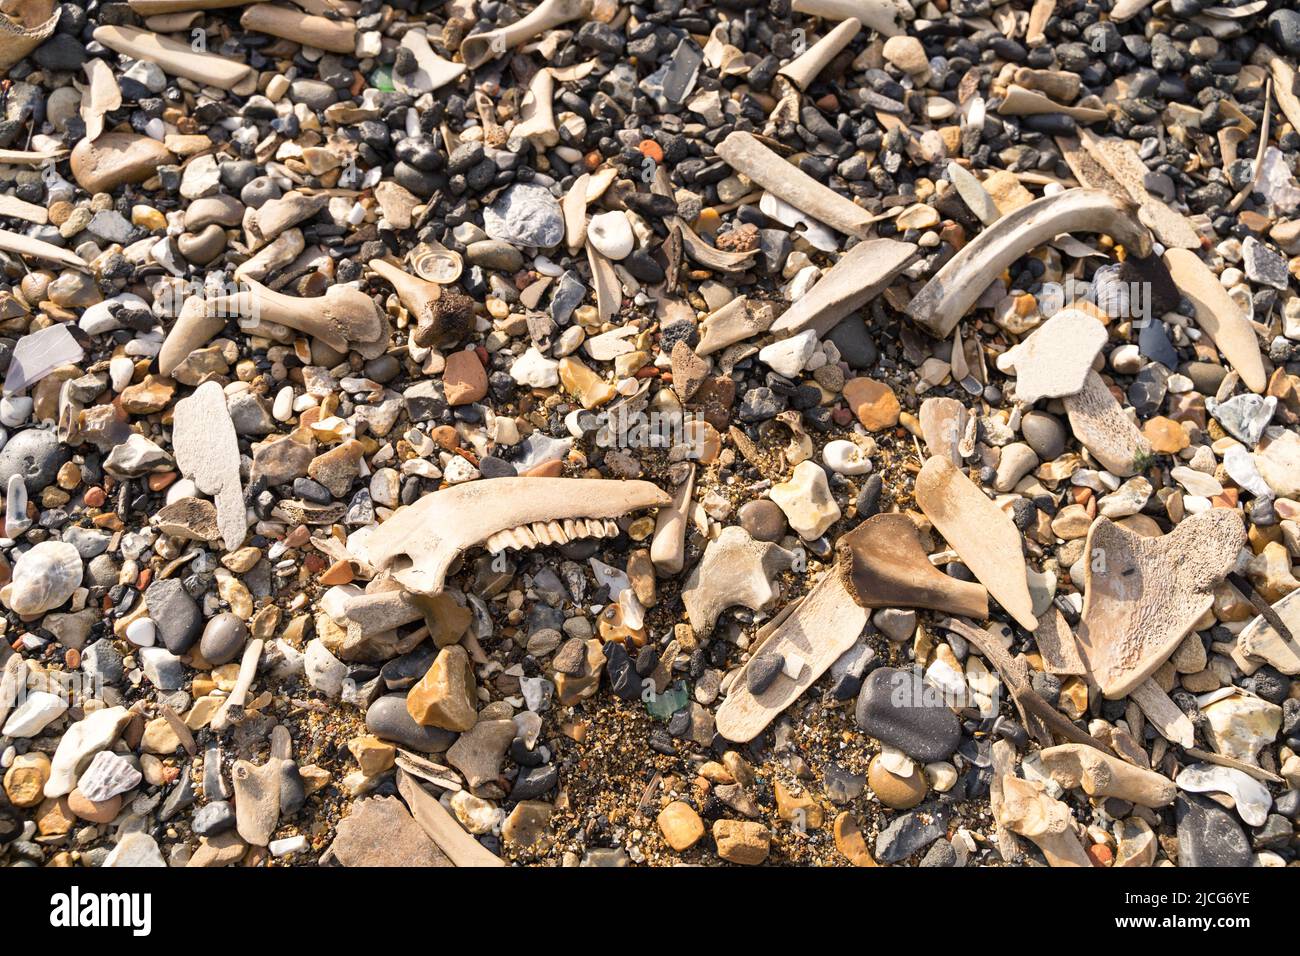 Le rivage est recouvert de grandes quantités d'os mélangés et brisés délavés par la vague de marée à River Thames, Londres Angleterre Royaume-Uni Banque D'Images